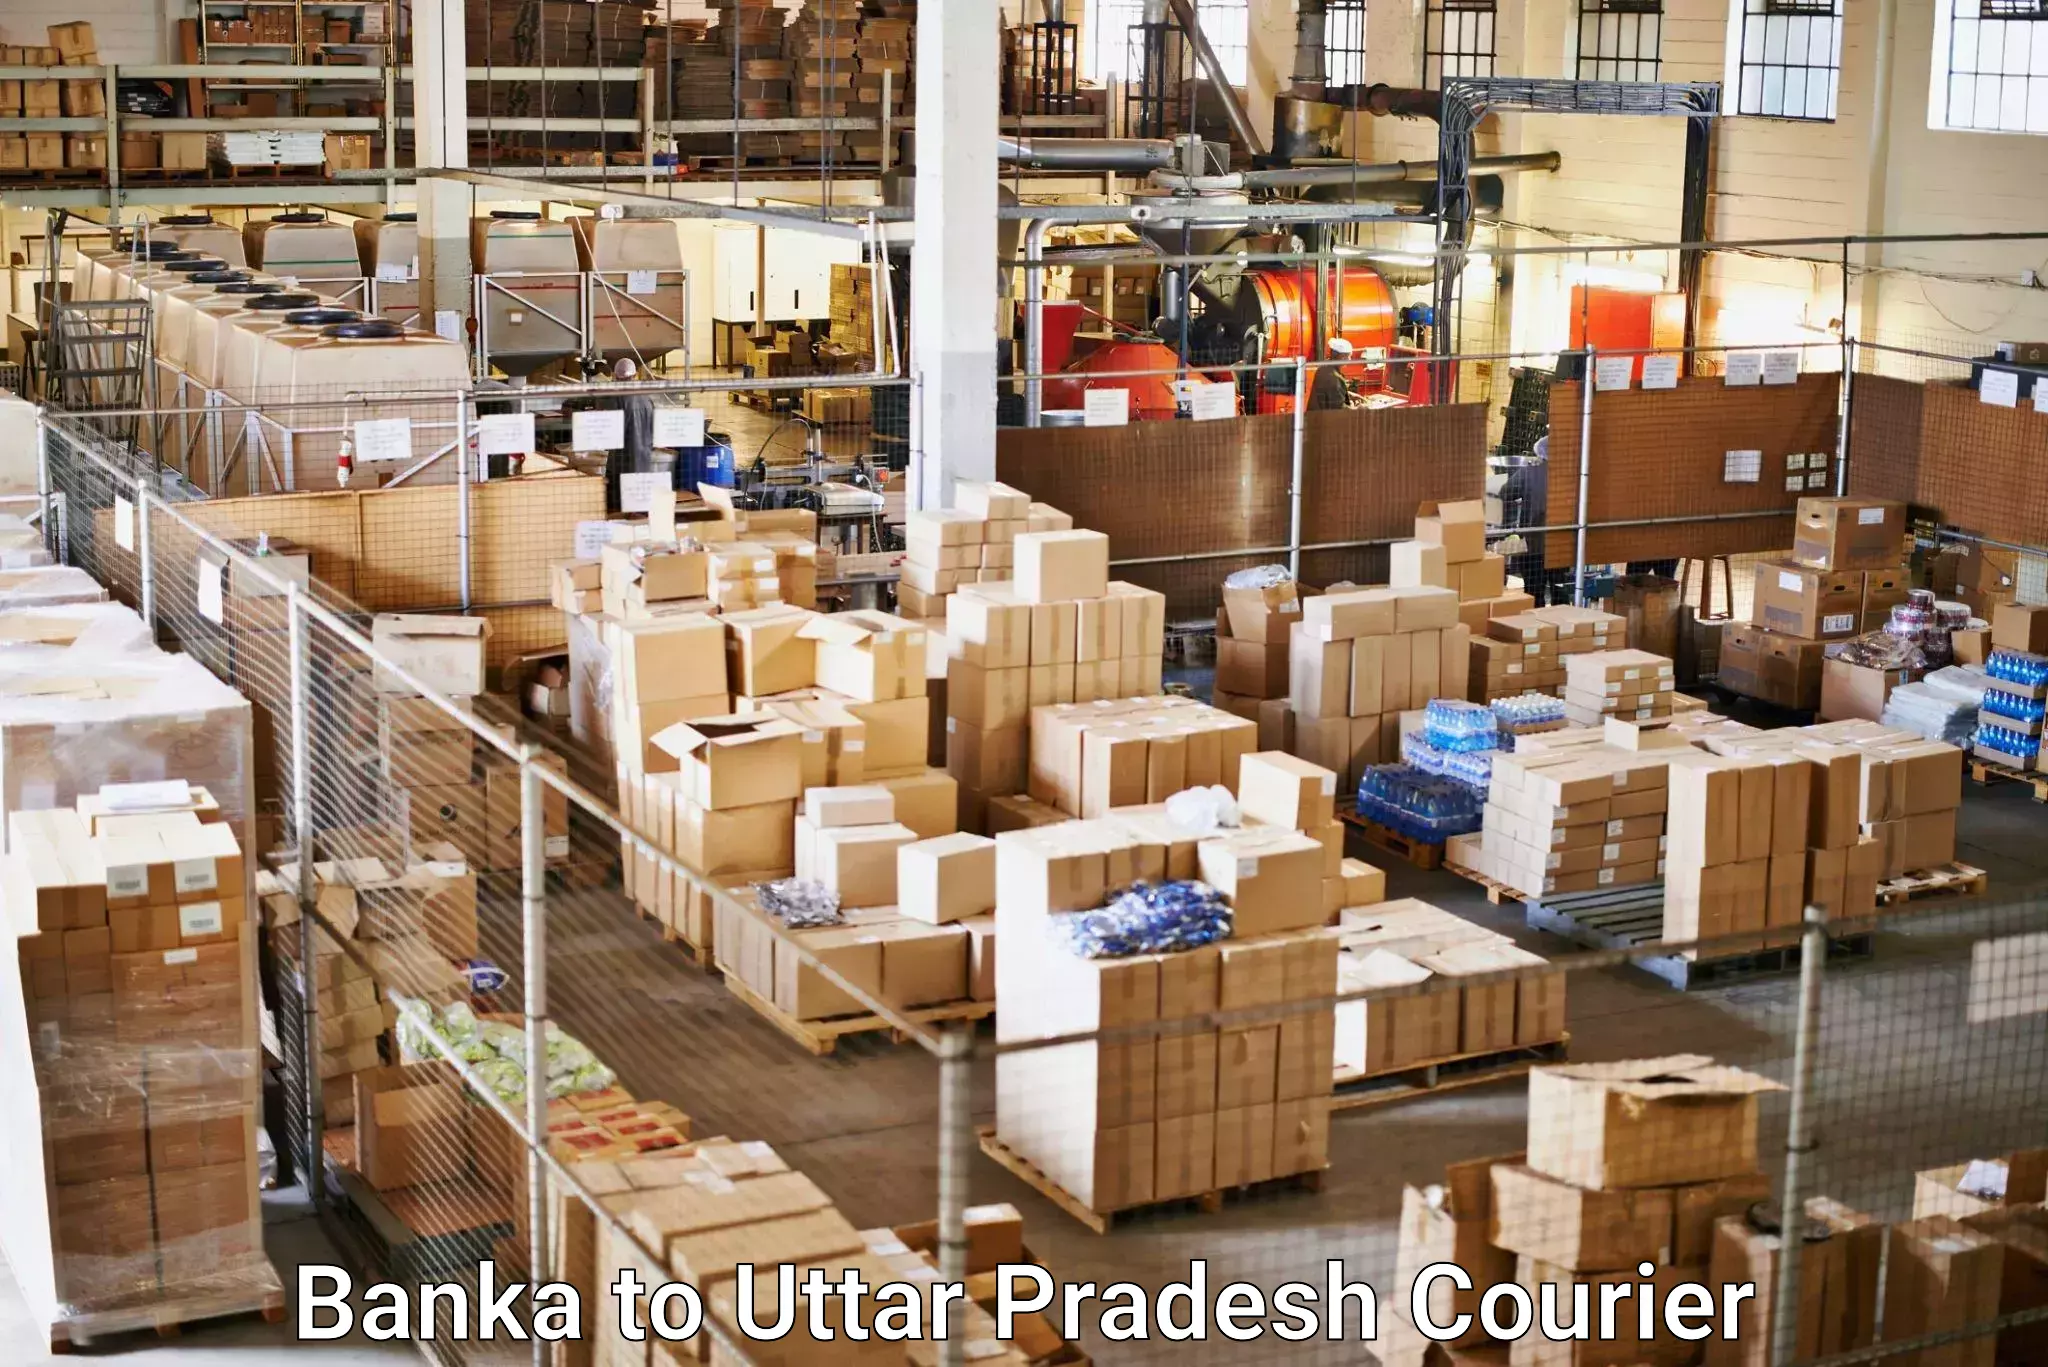 Efficient parcel transport in Banka to Uttar Pradesh